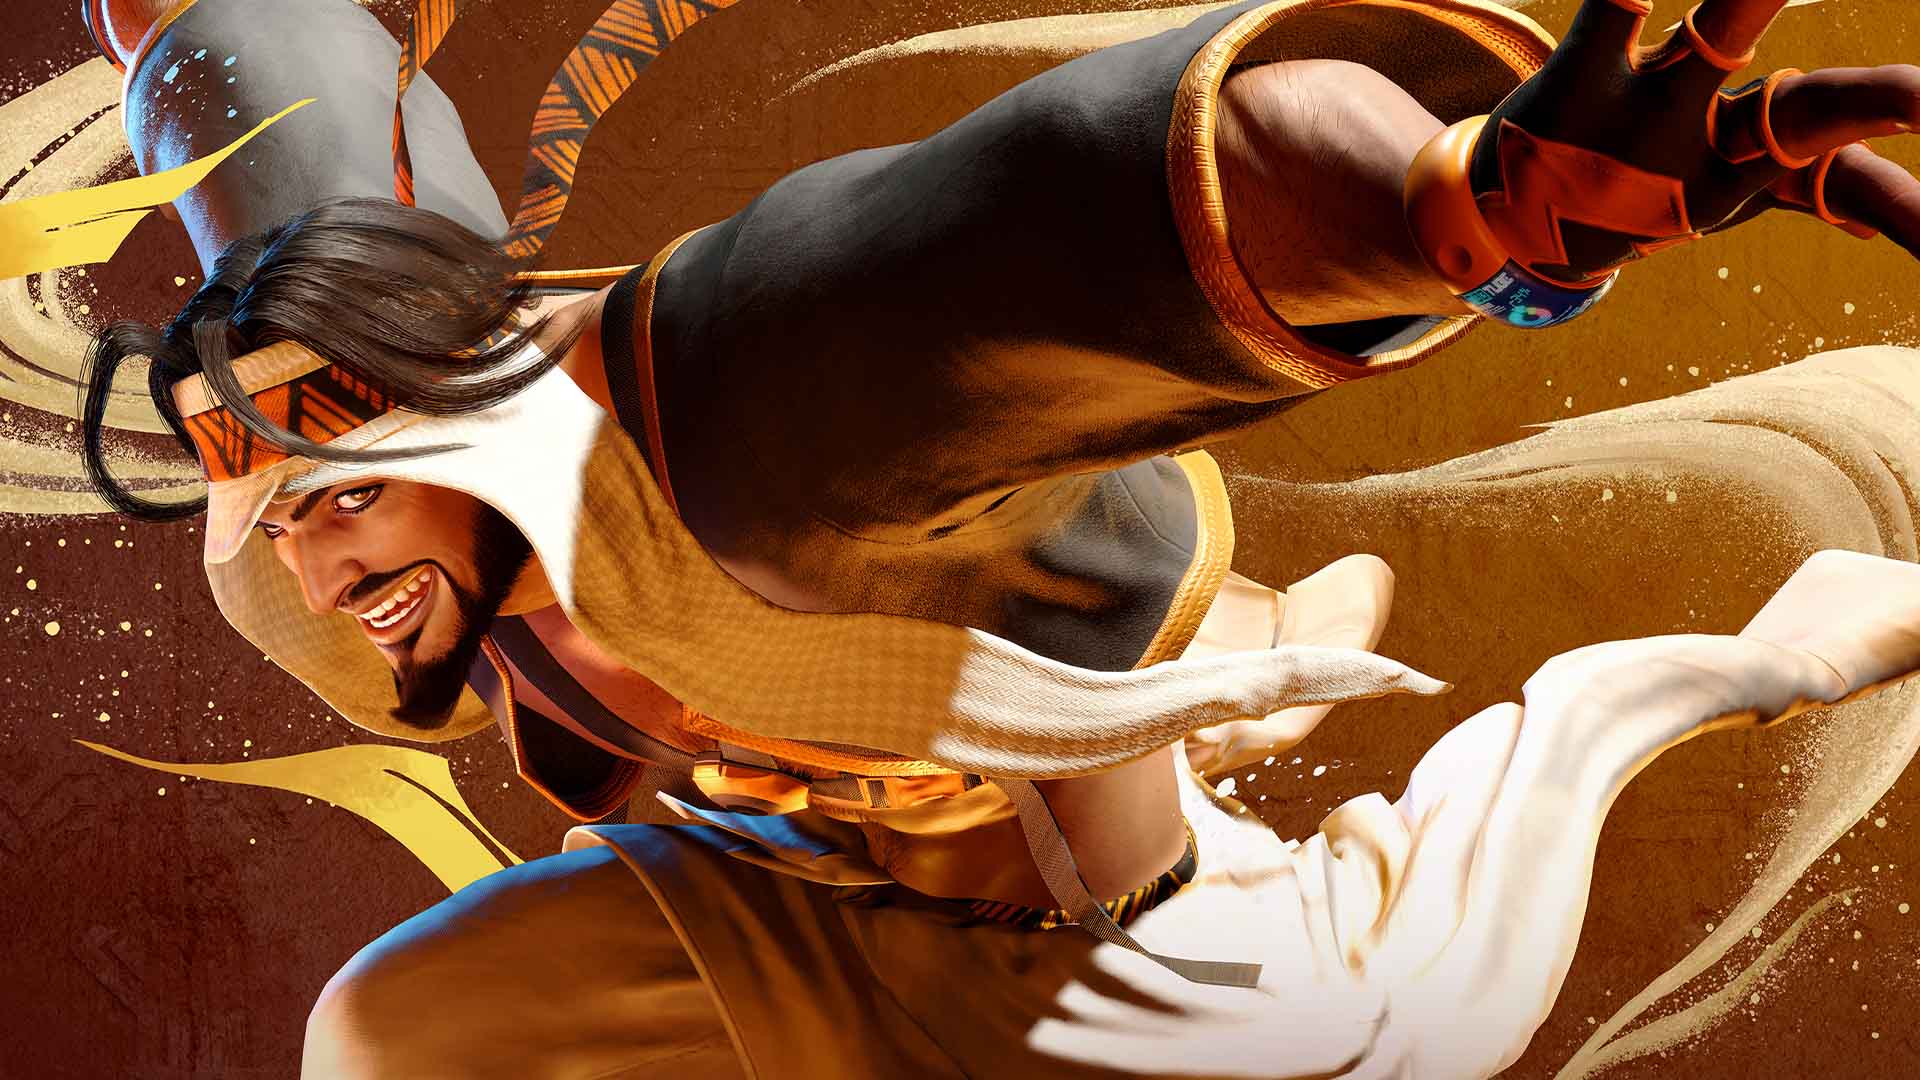 Rashid arriverà in Street Fighter 6 il 24 luglio